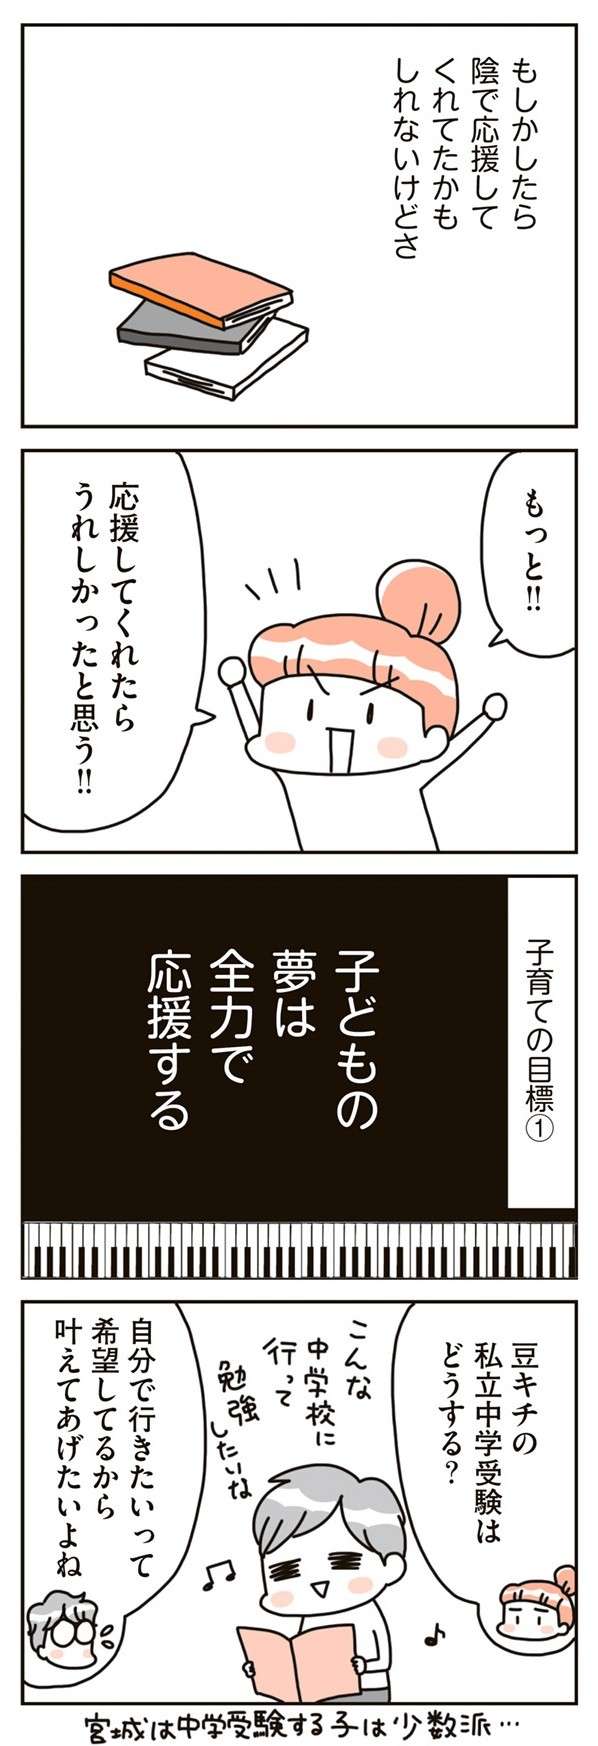 chintaika_mochiieka18-3.jpg